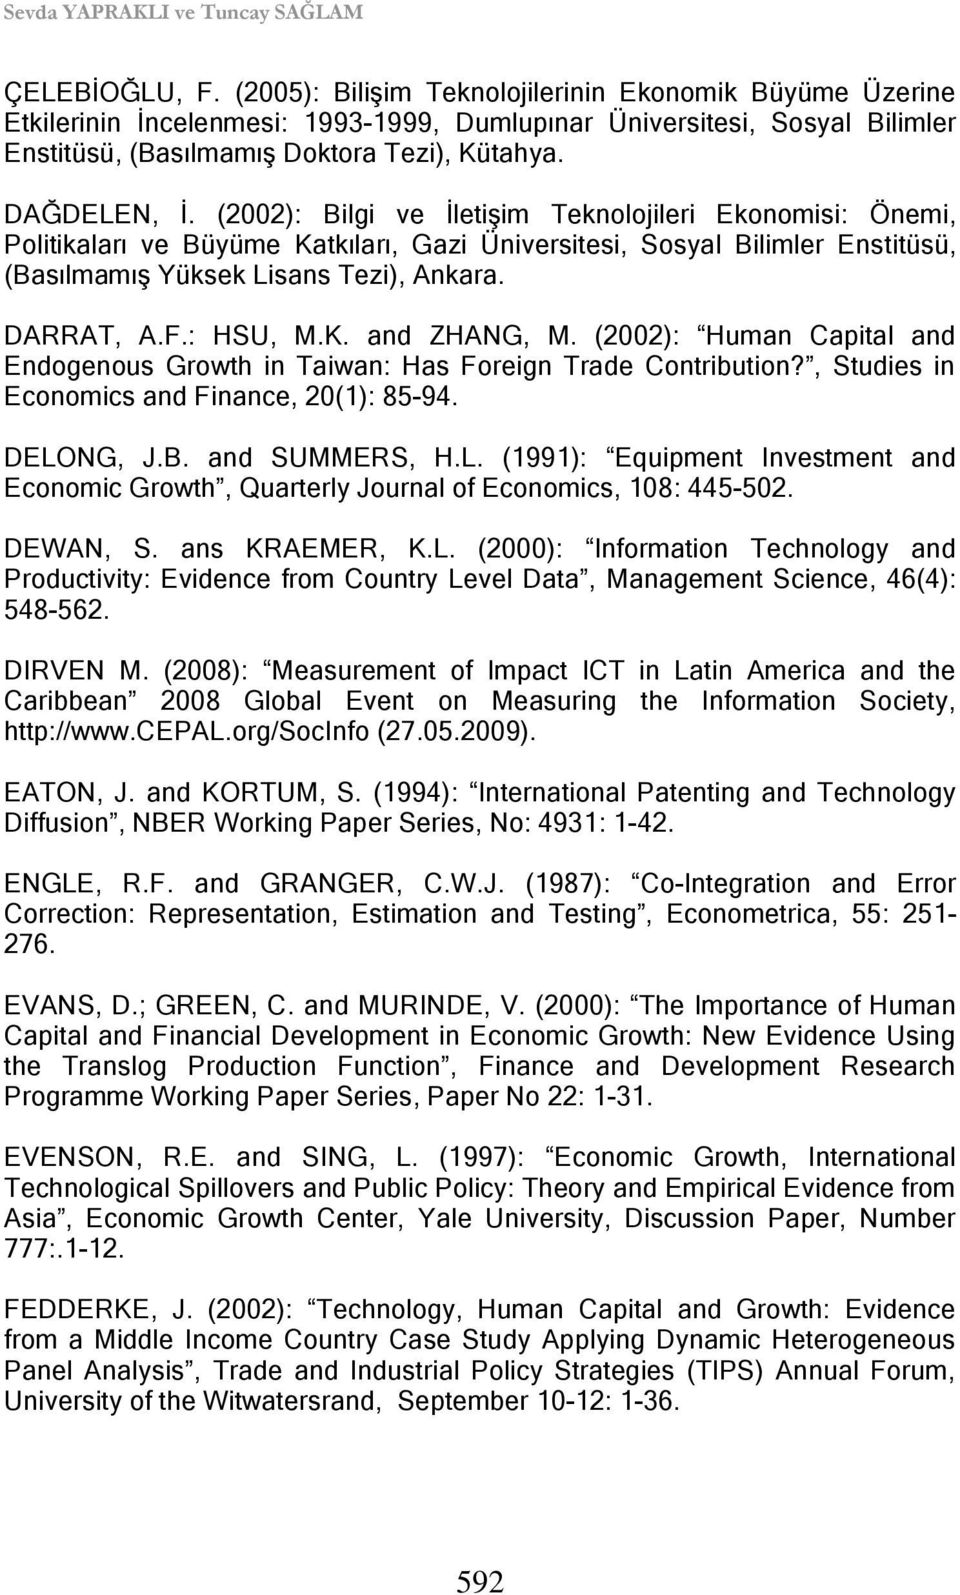 (2002): Bilgi ve ĠletiĢim Teknolojileri Ekonomisi: Önemi, Politikaları ve Büyüme Katkıları, Gazi Üniversitesi, Sosyal Bilimler Enstitüsü, (BasılmamıĢ Yüksek Lisans Tezi), Ankara. DARRAT, A.F.: HSU, M.